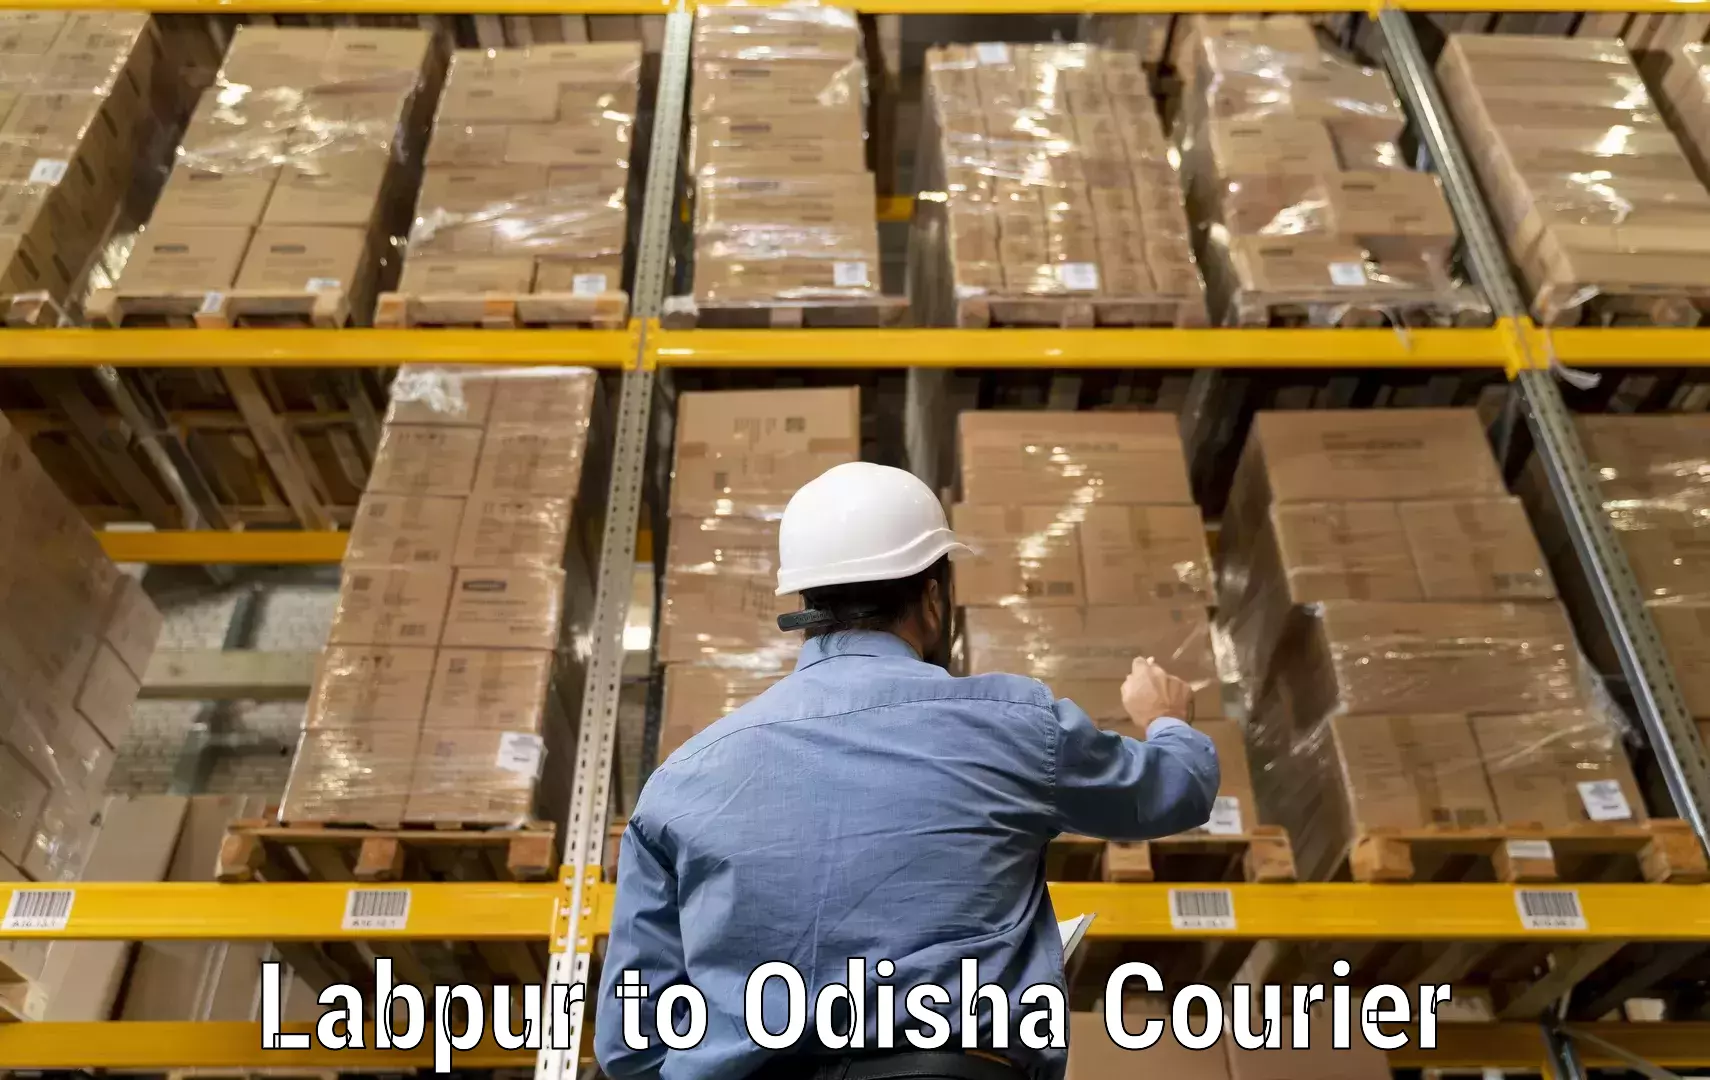 Courier service efficiency Labpur to Mahakalapada